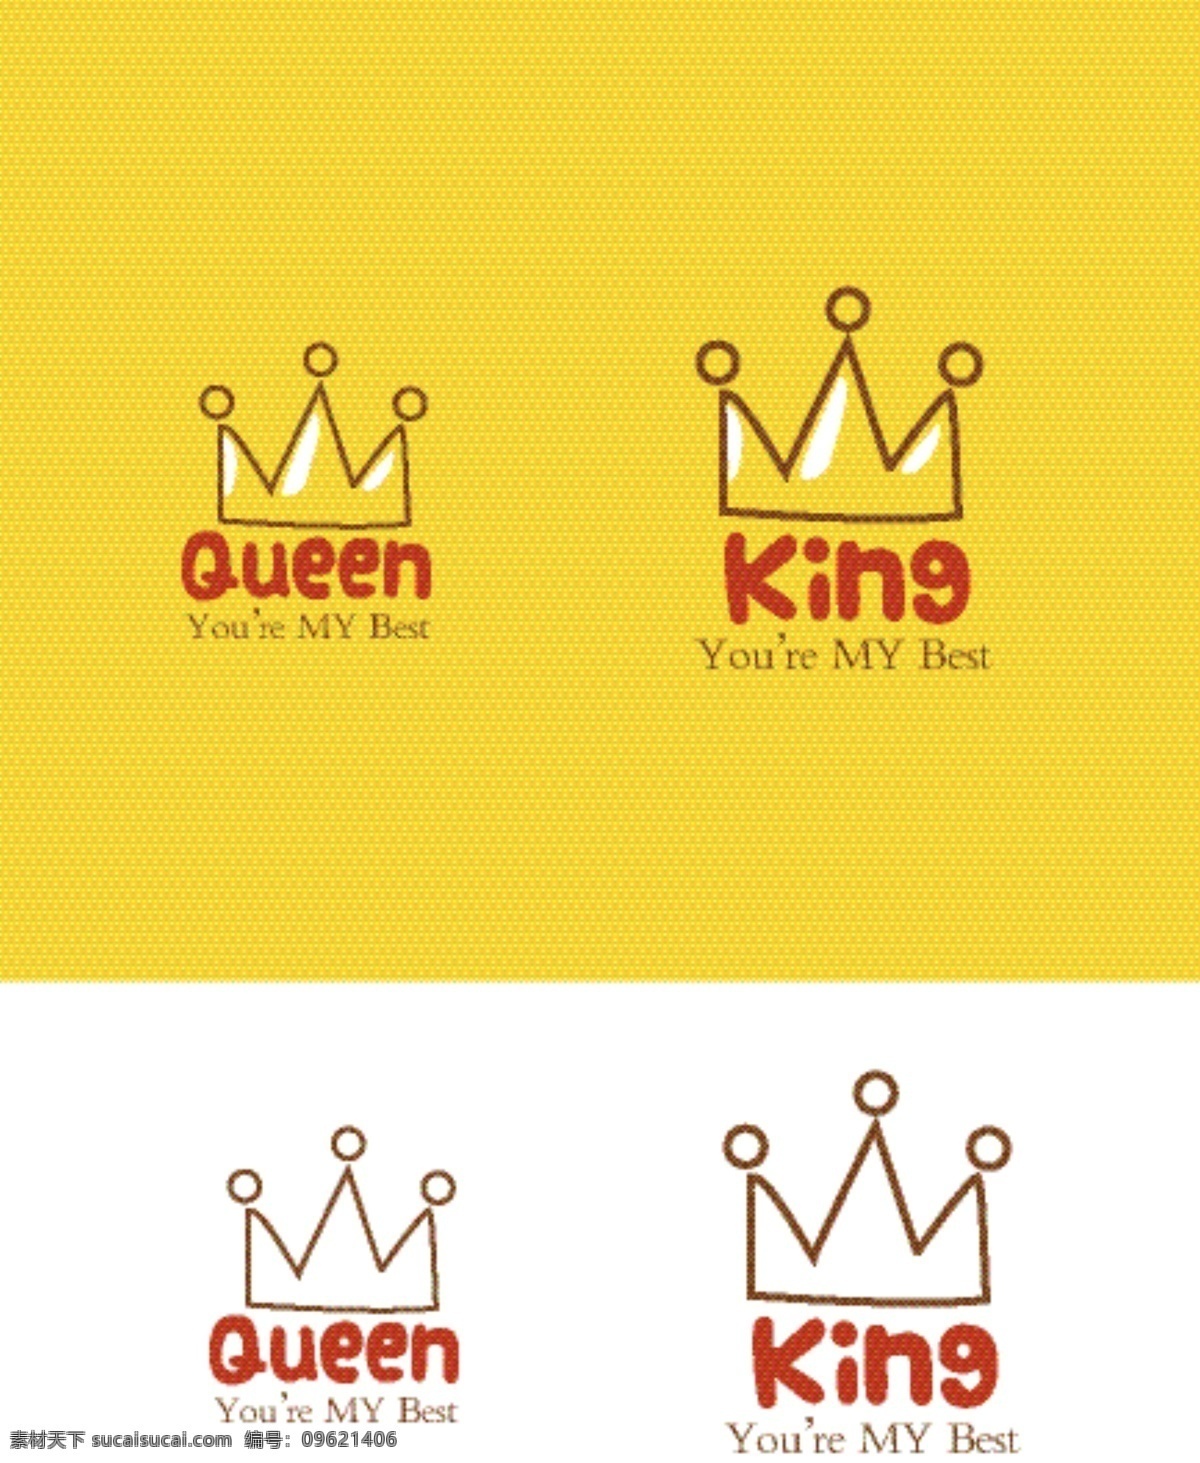 国王 情侣图案 王后 queen king 情侣 手绘 矢量 图标 皇冠 皇冠图标 标志图标 其他图标